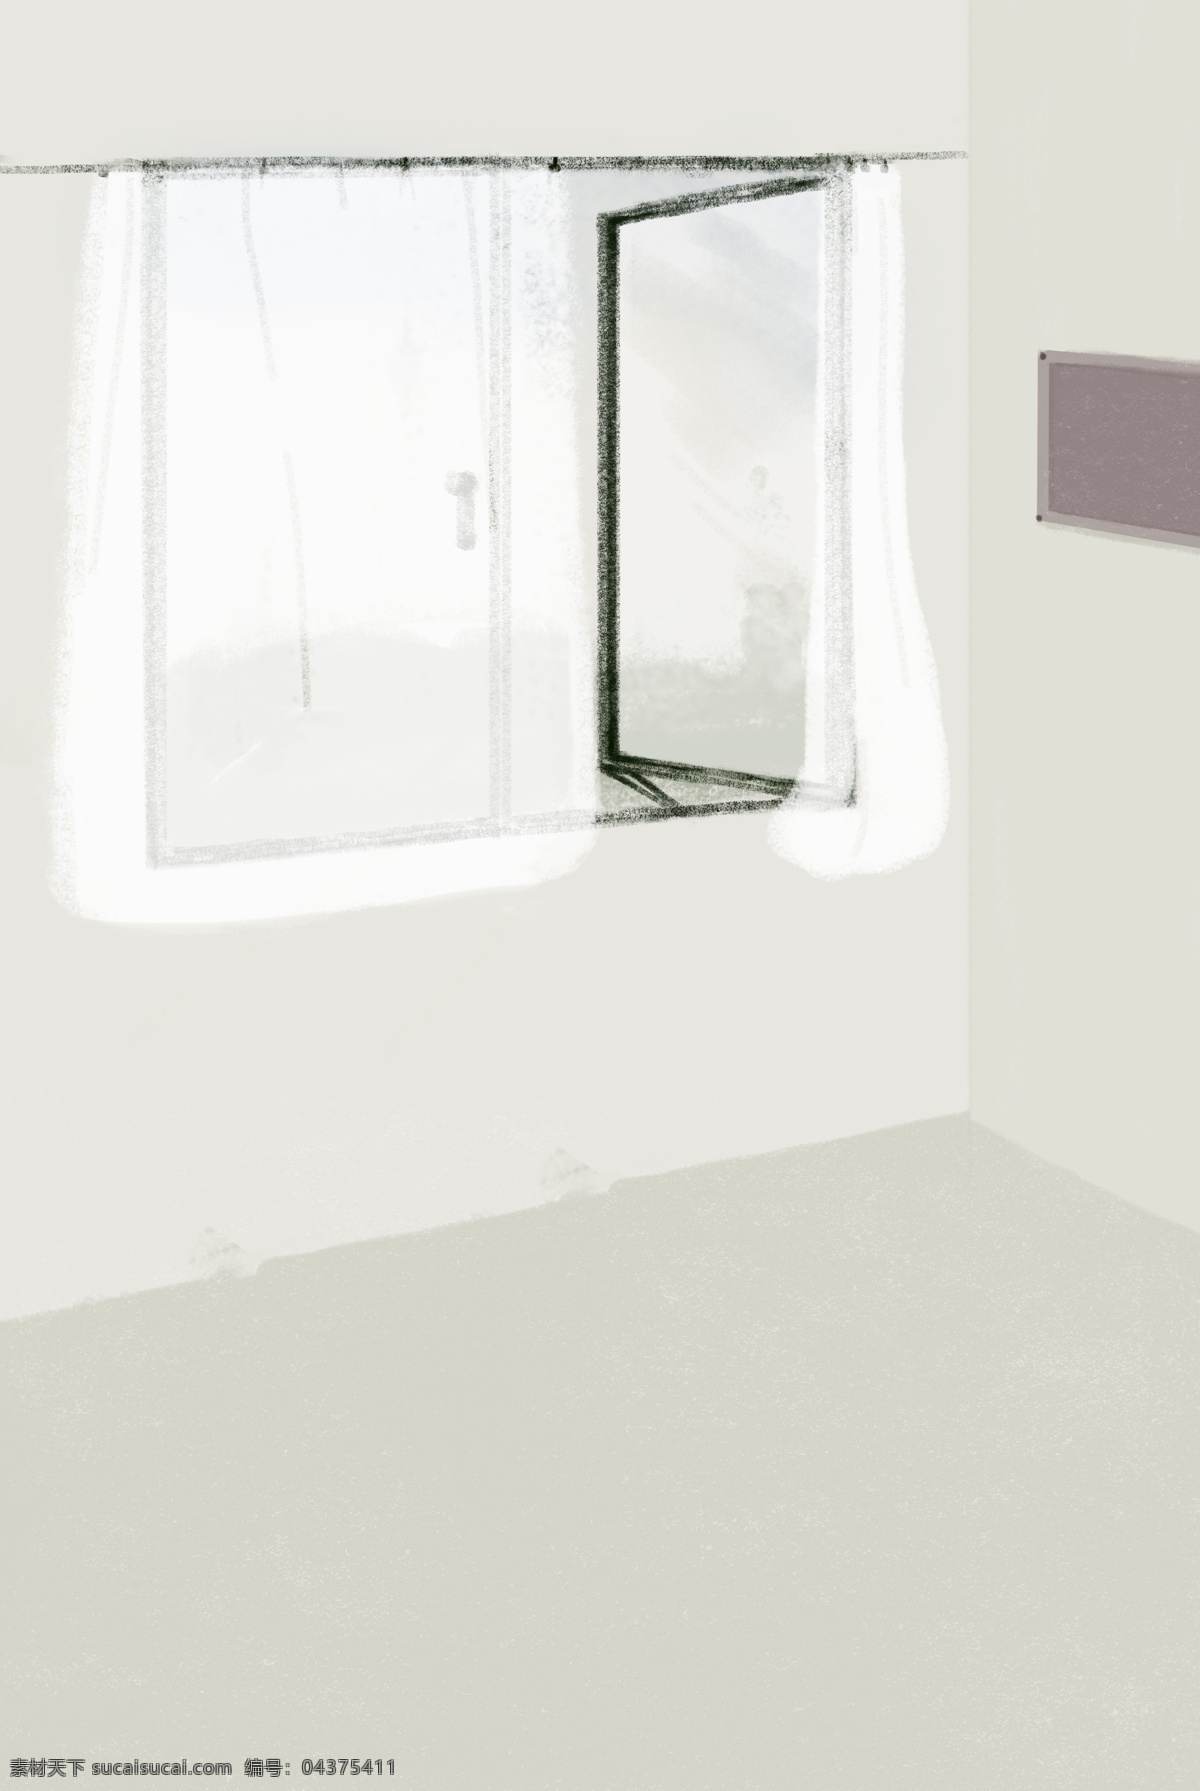 简约 文艺 室内 背景 屋内 玻璃窗 白纱窗户 墙画 清新